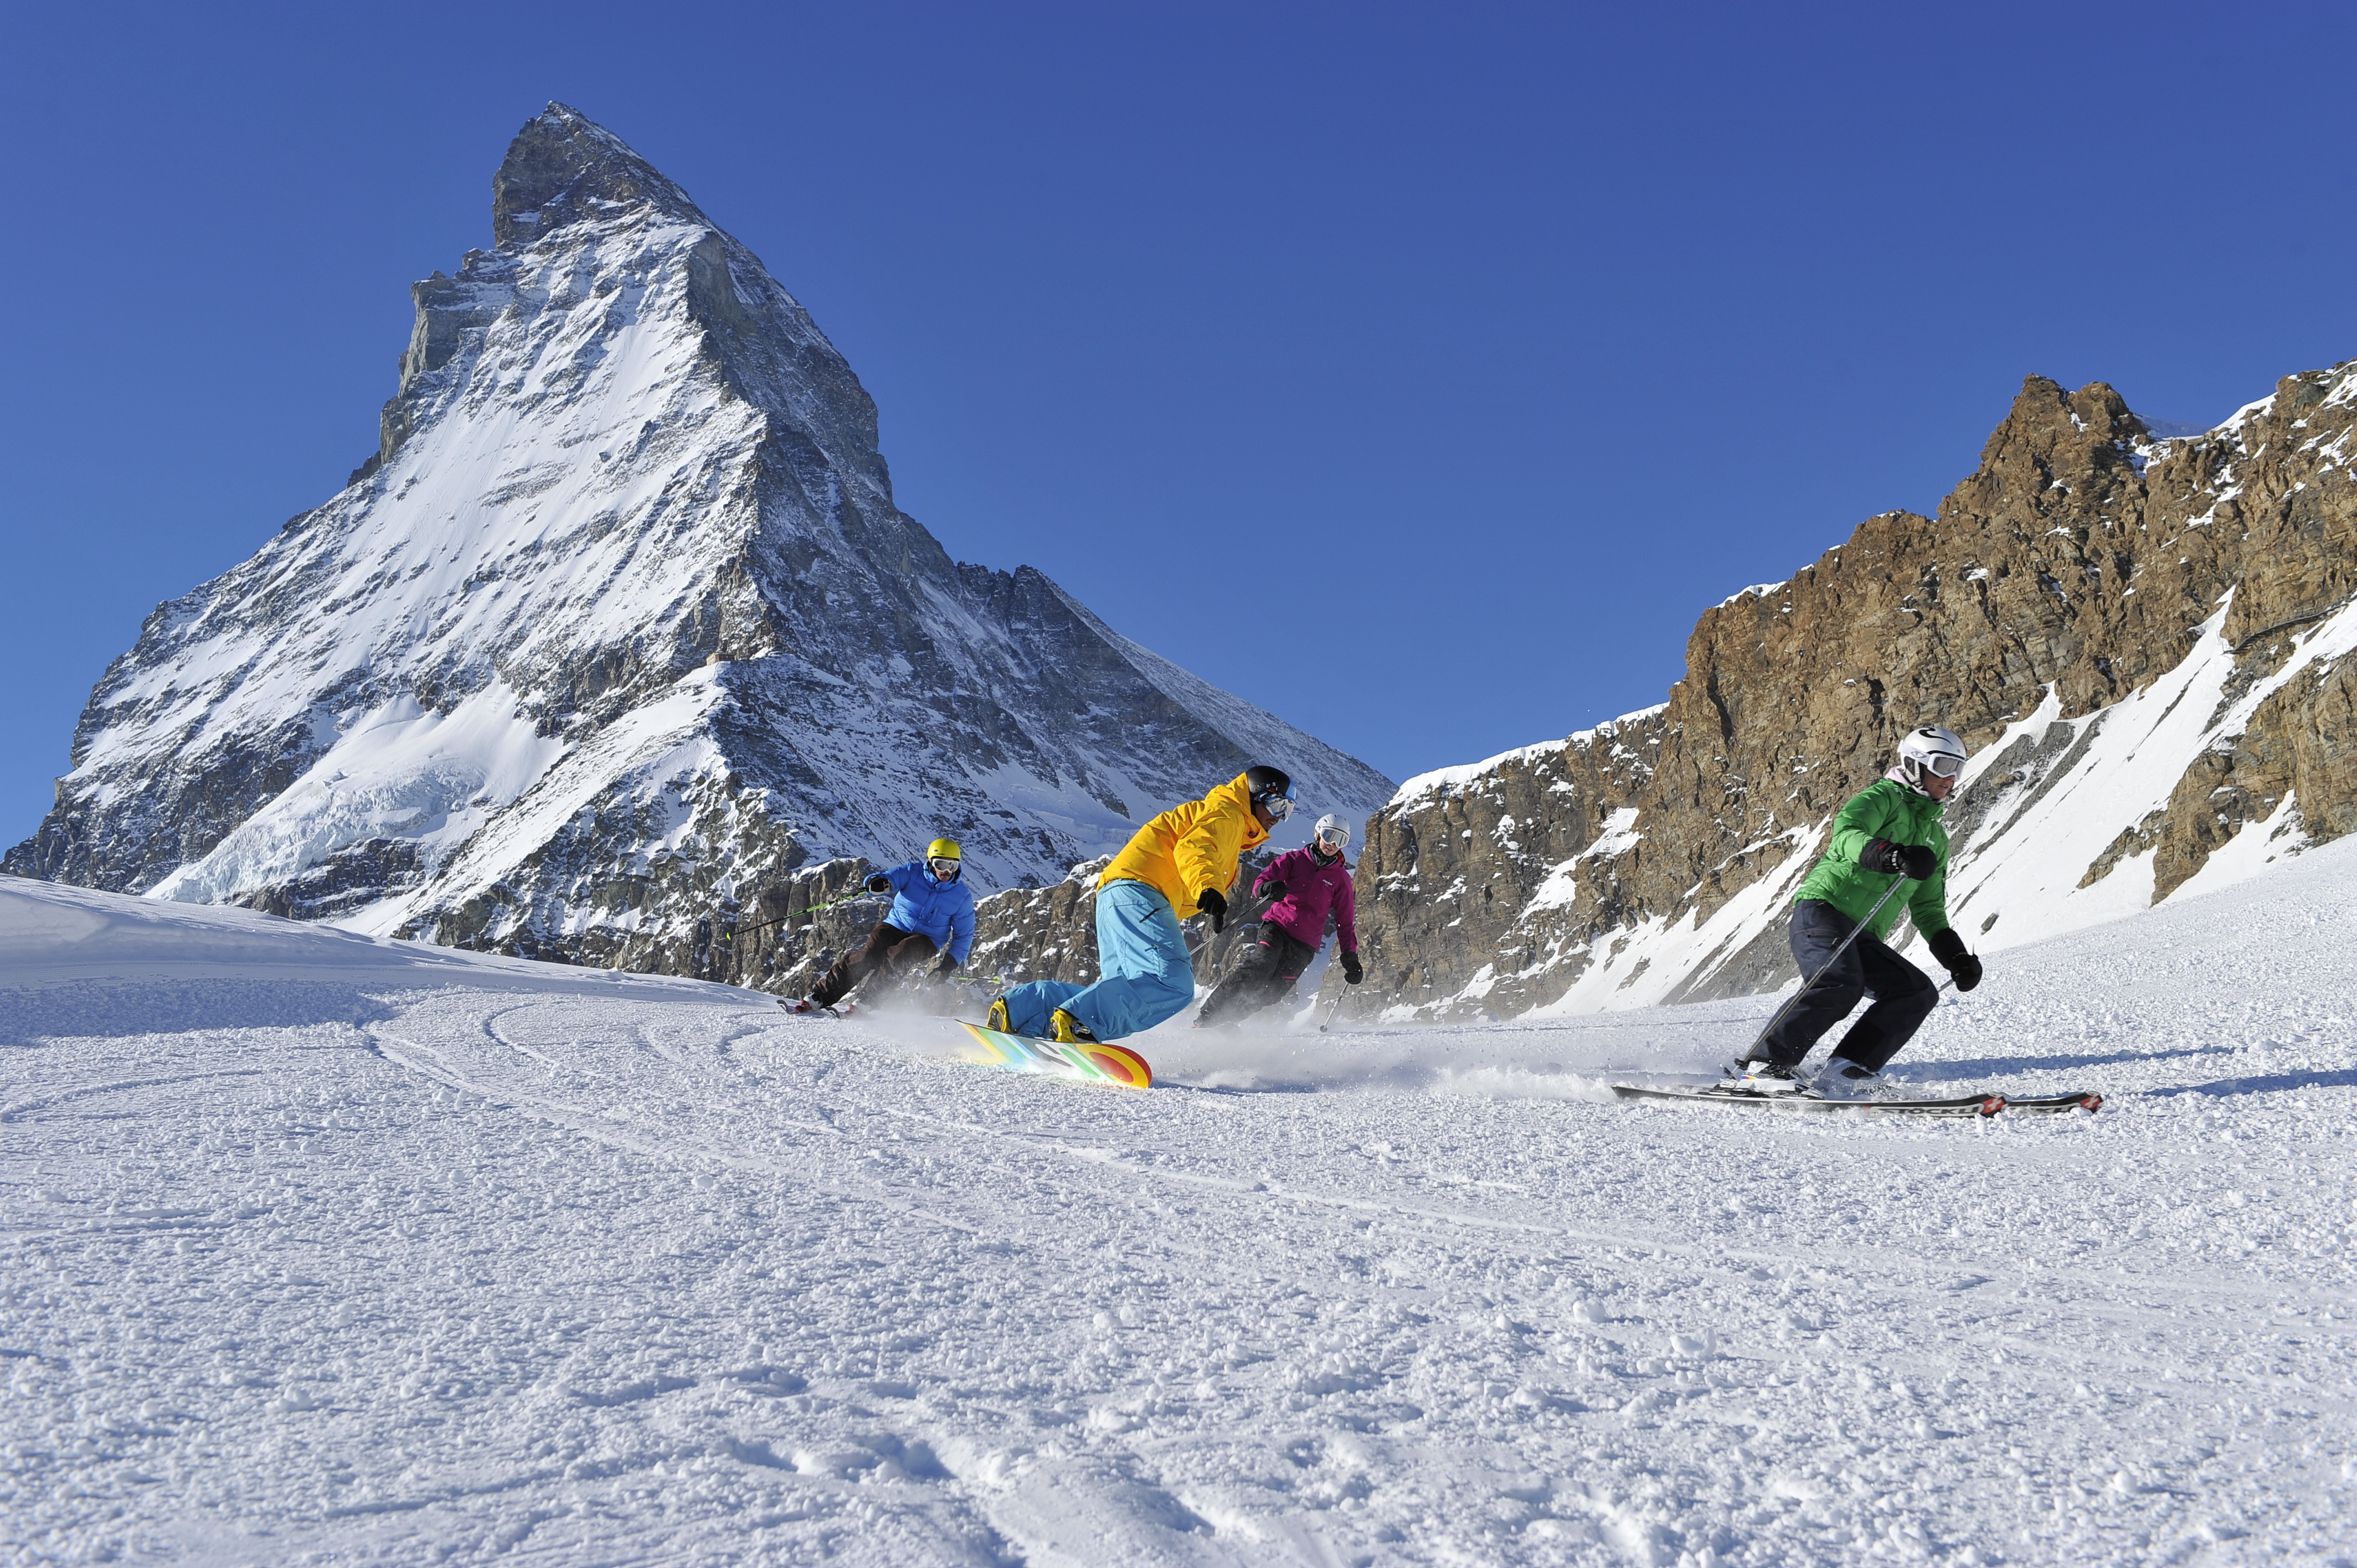 Skiing in front of the Matterhorn (Portman)